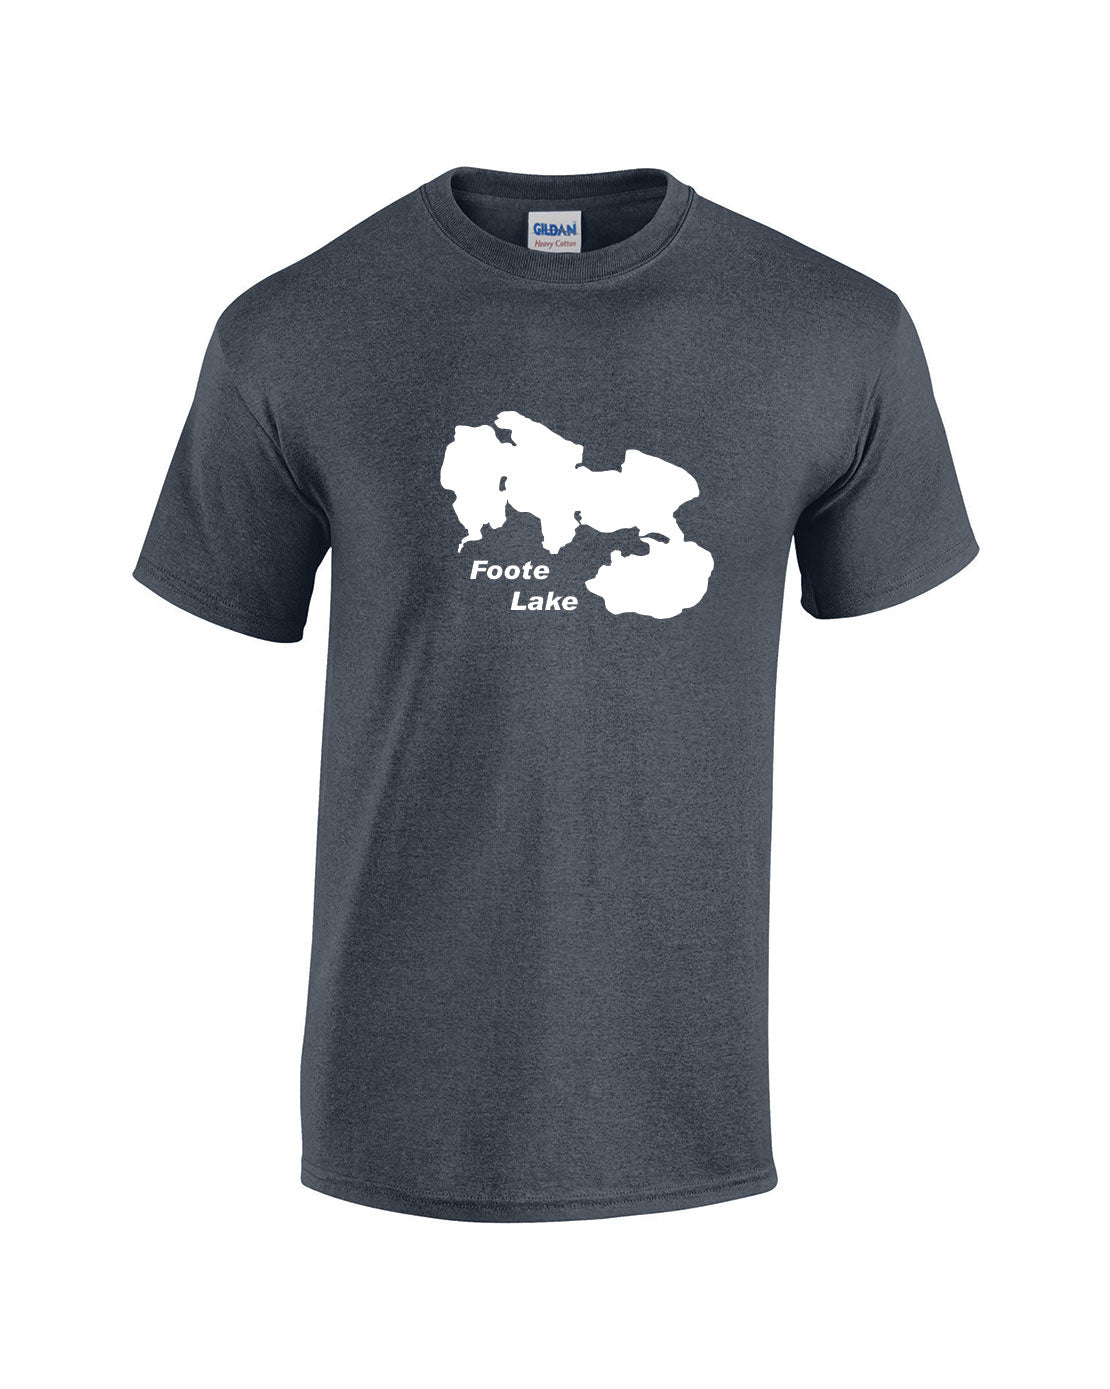 Foote Lake T-Shirt